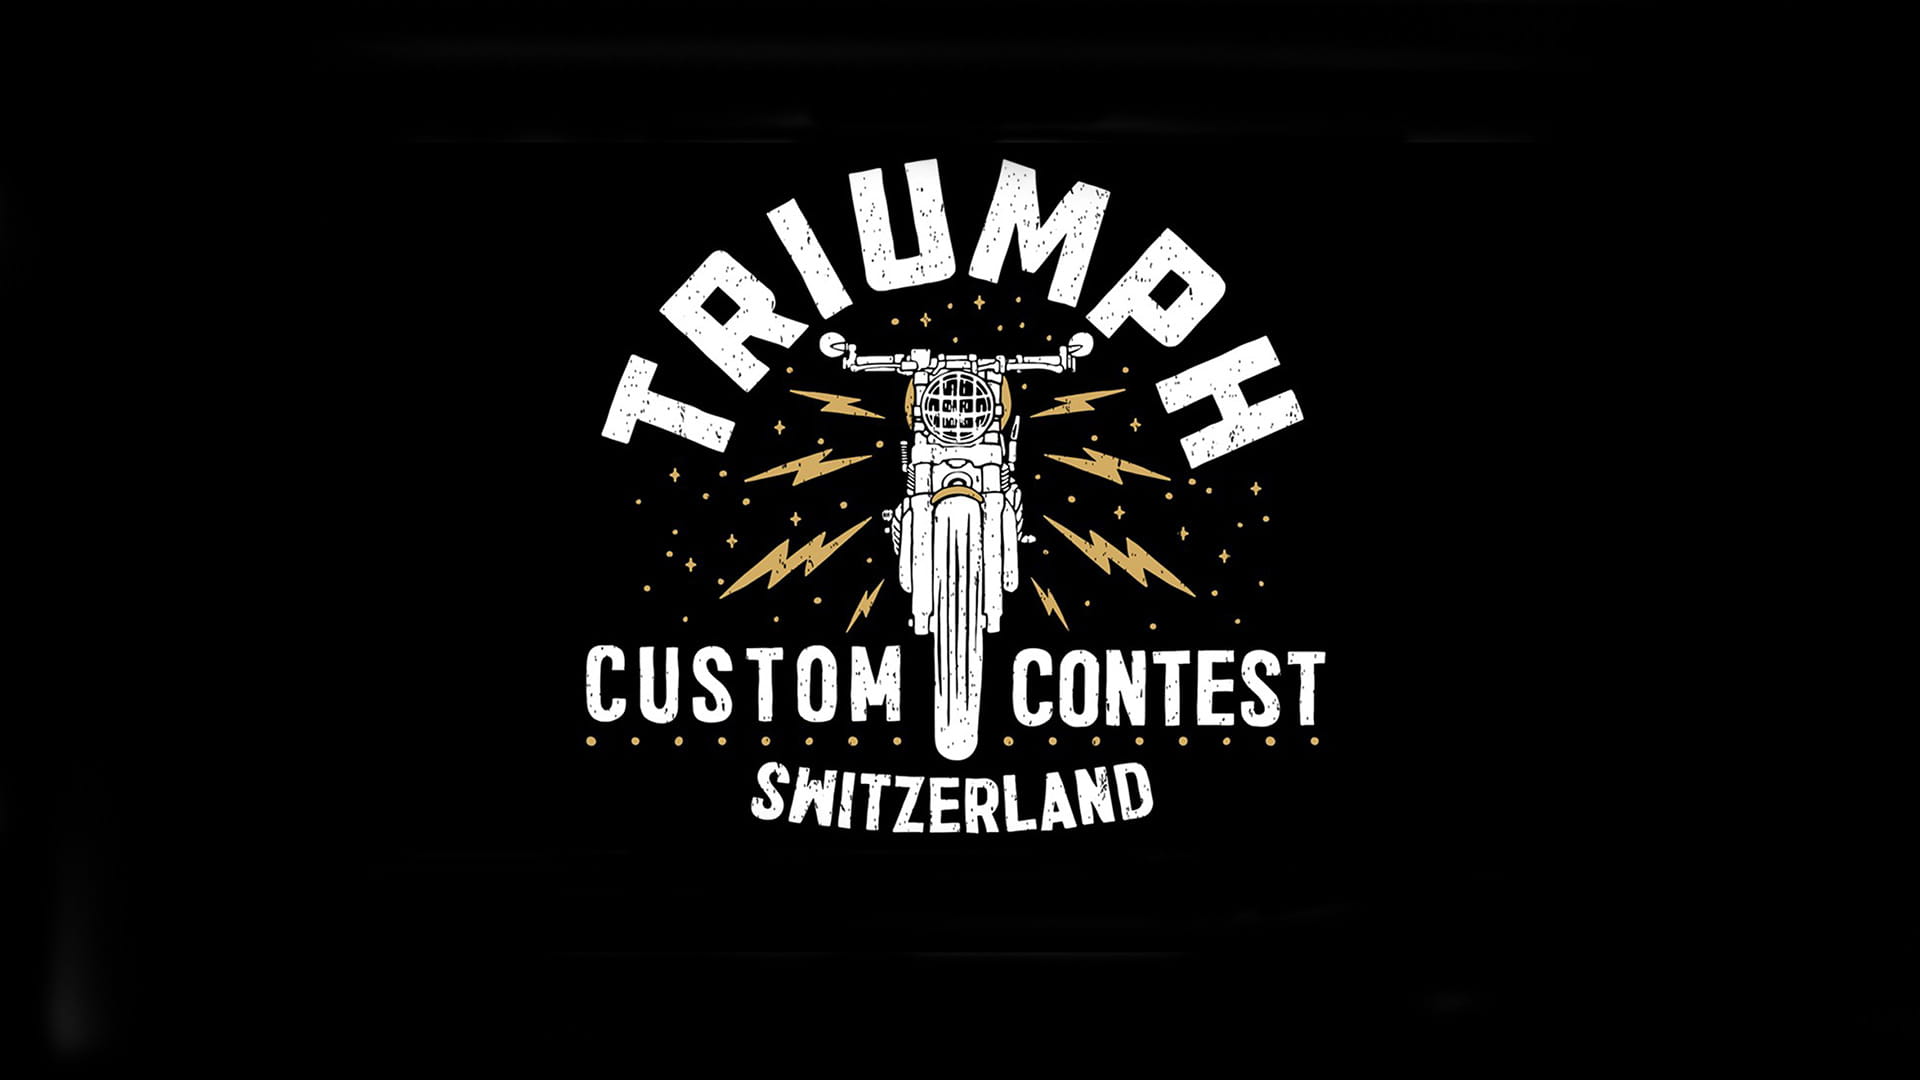 Triumph Custom Contest Switzerland